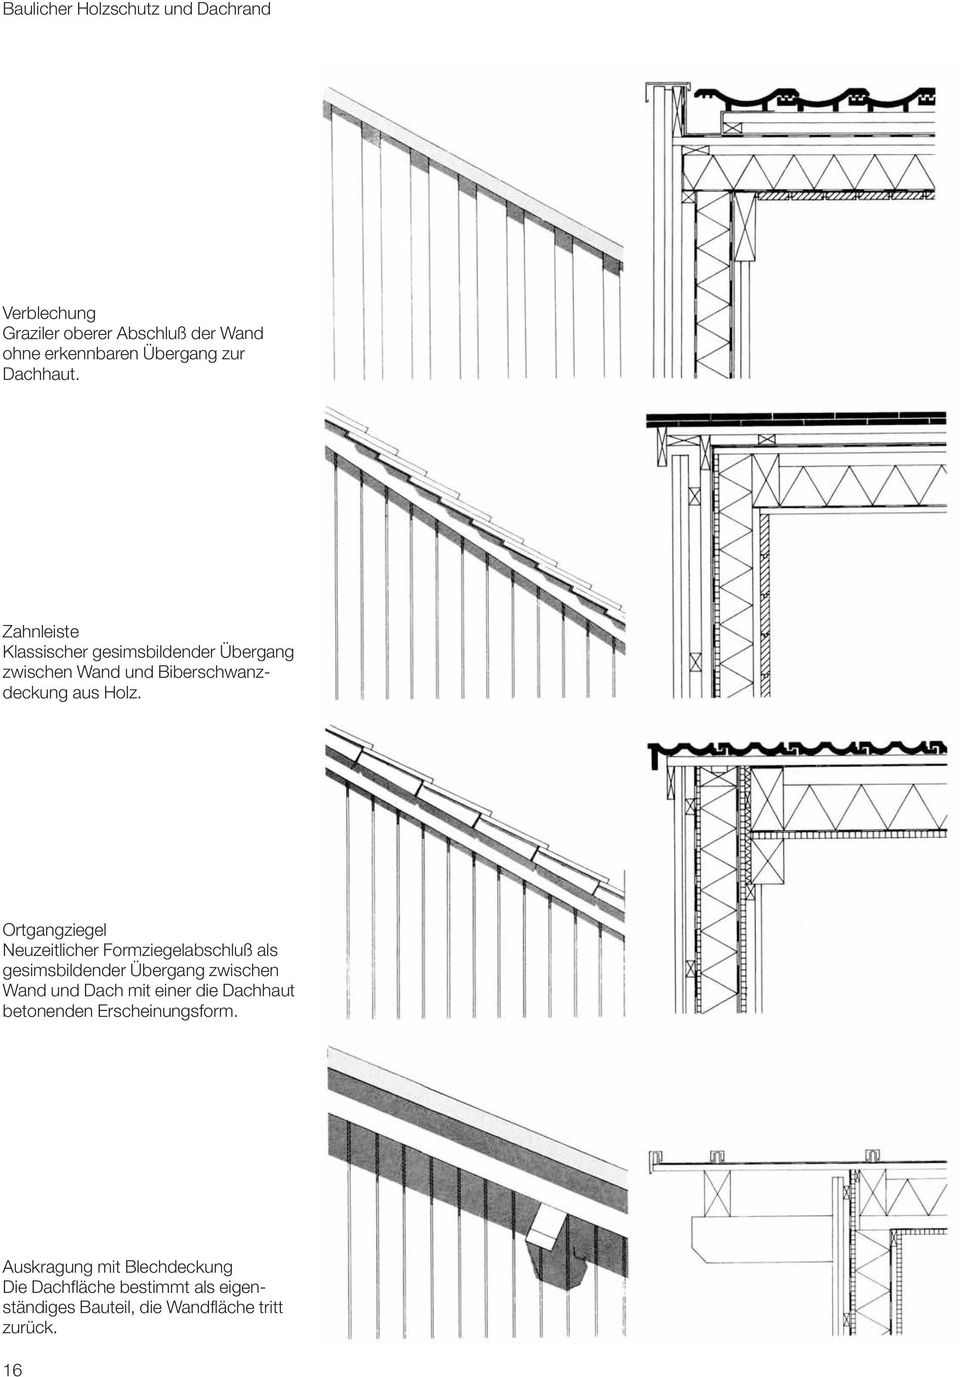 Ortgangziegel Neuzeitlicher Formziegelabschluß als gesimsbildender Übergang zwischen Wand und Dach mit einer die